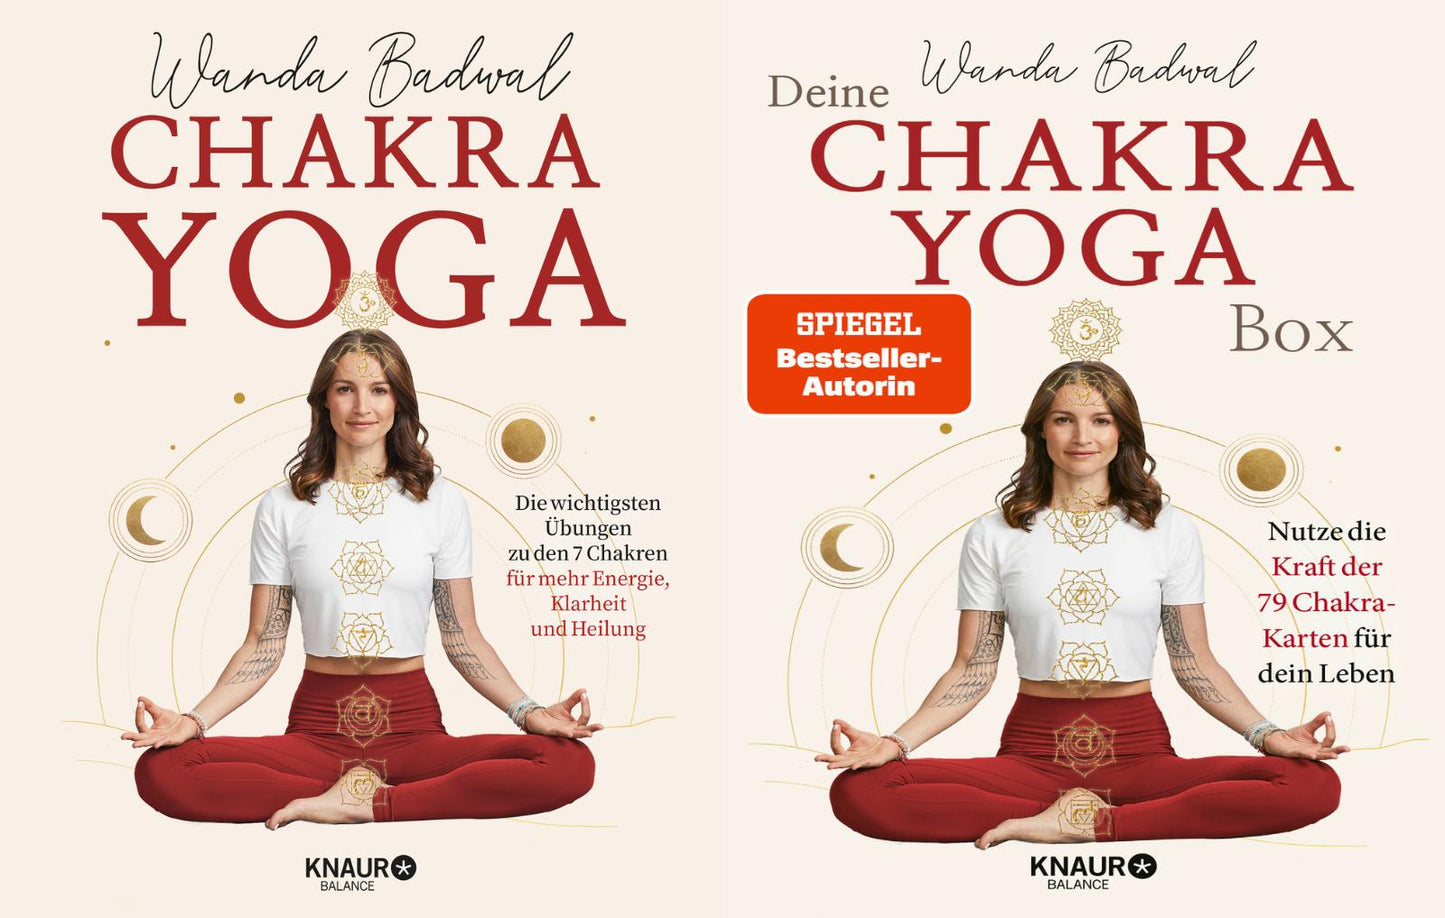 Chakra-Yoga + Deine Chakra-Yogabox + 1 exklusives Postkartenset